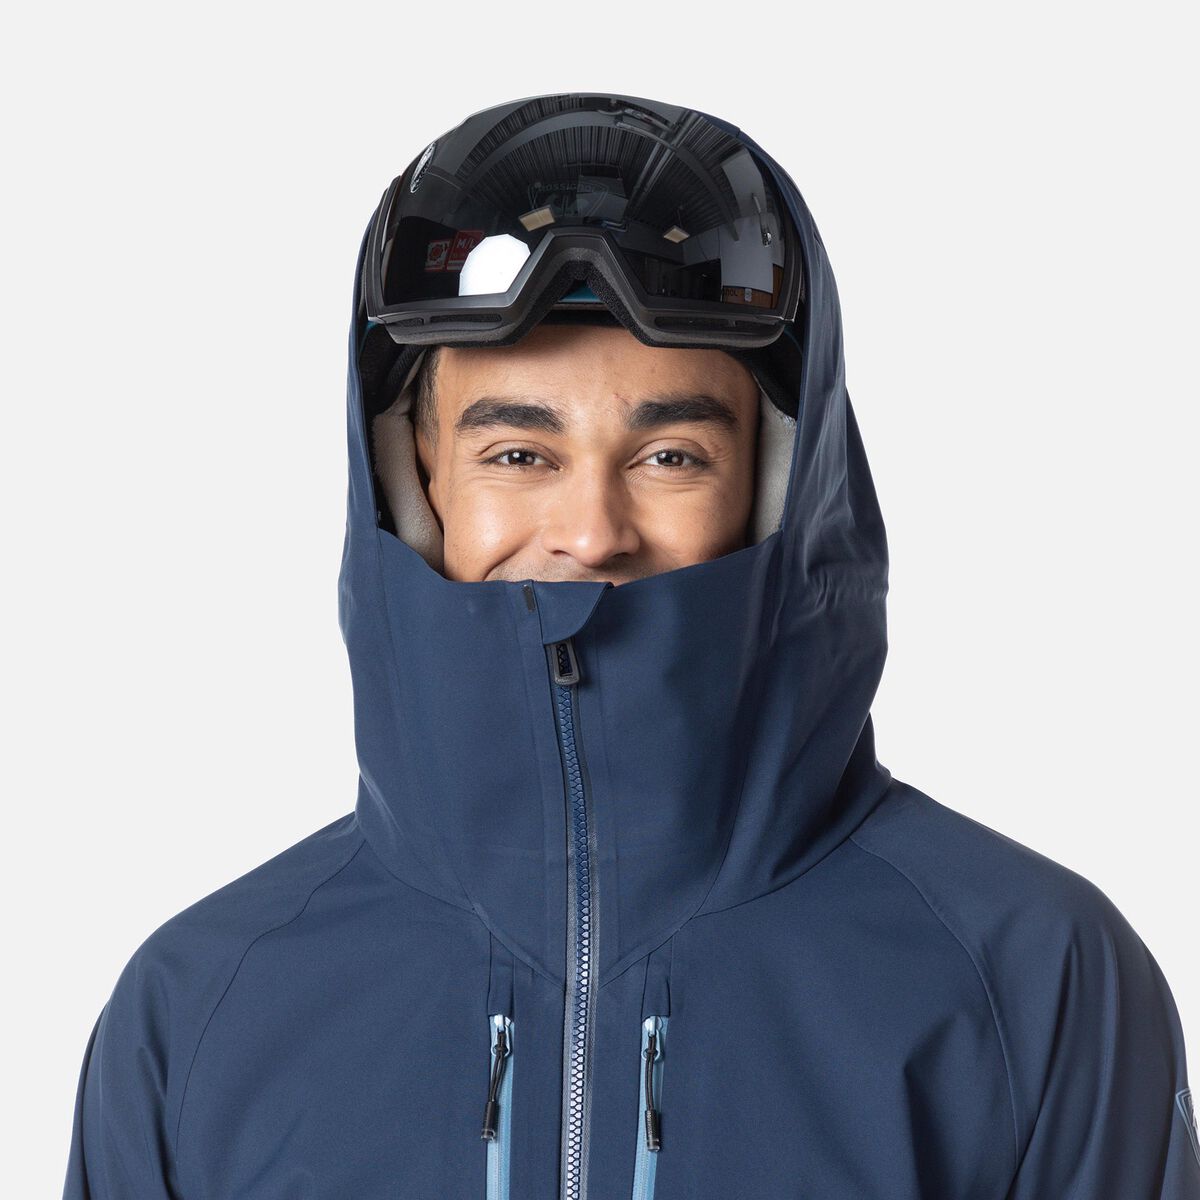 Rossignol Men's Evader Ski Jacket blue